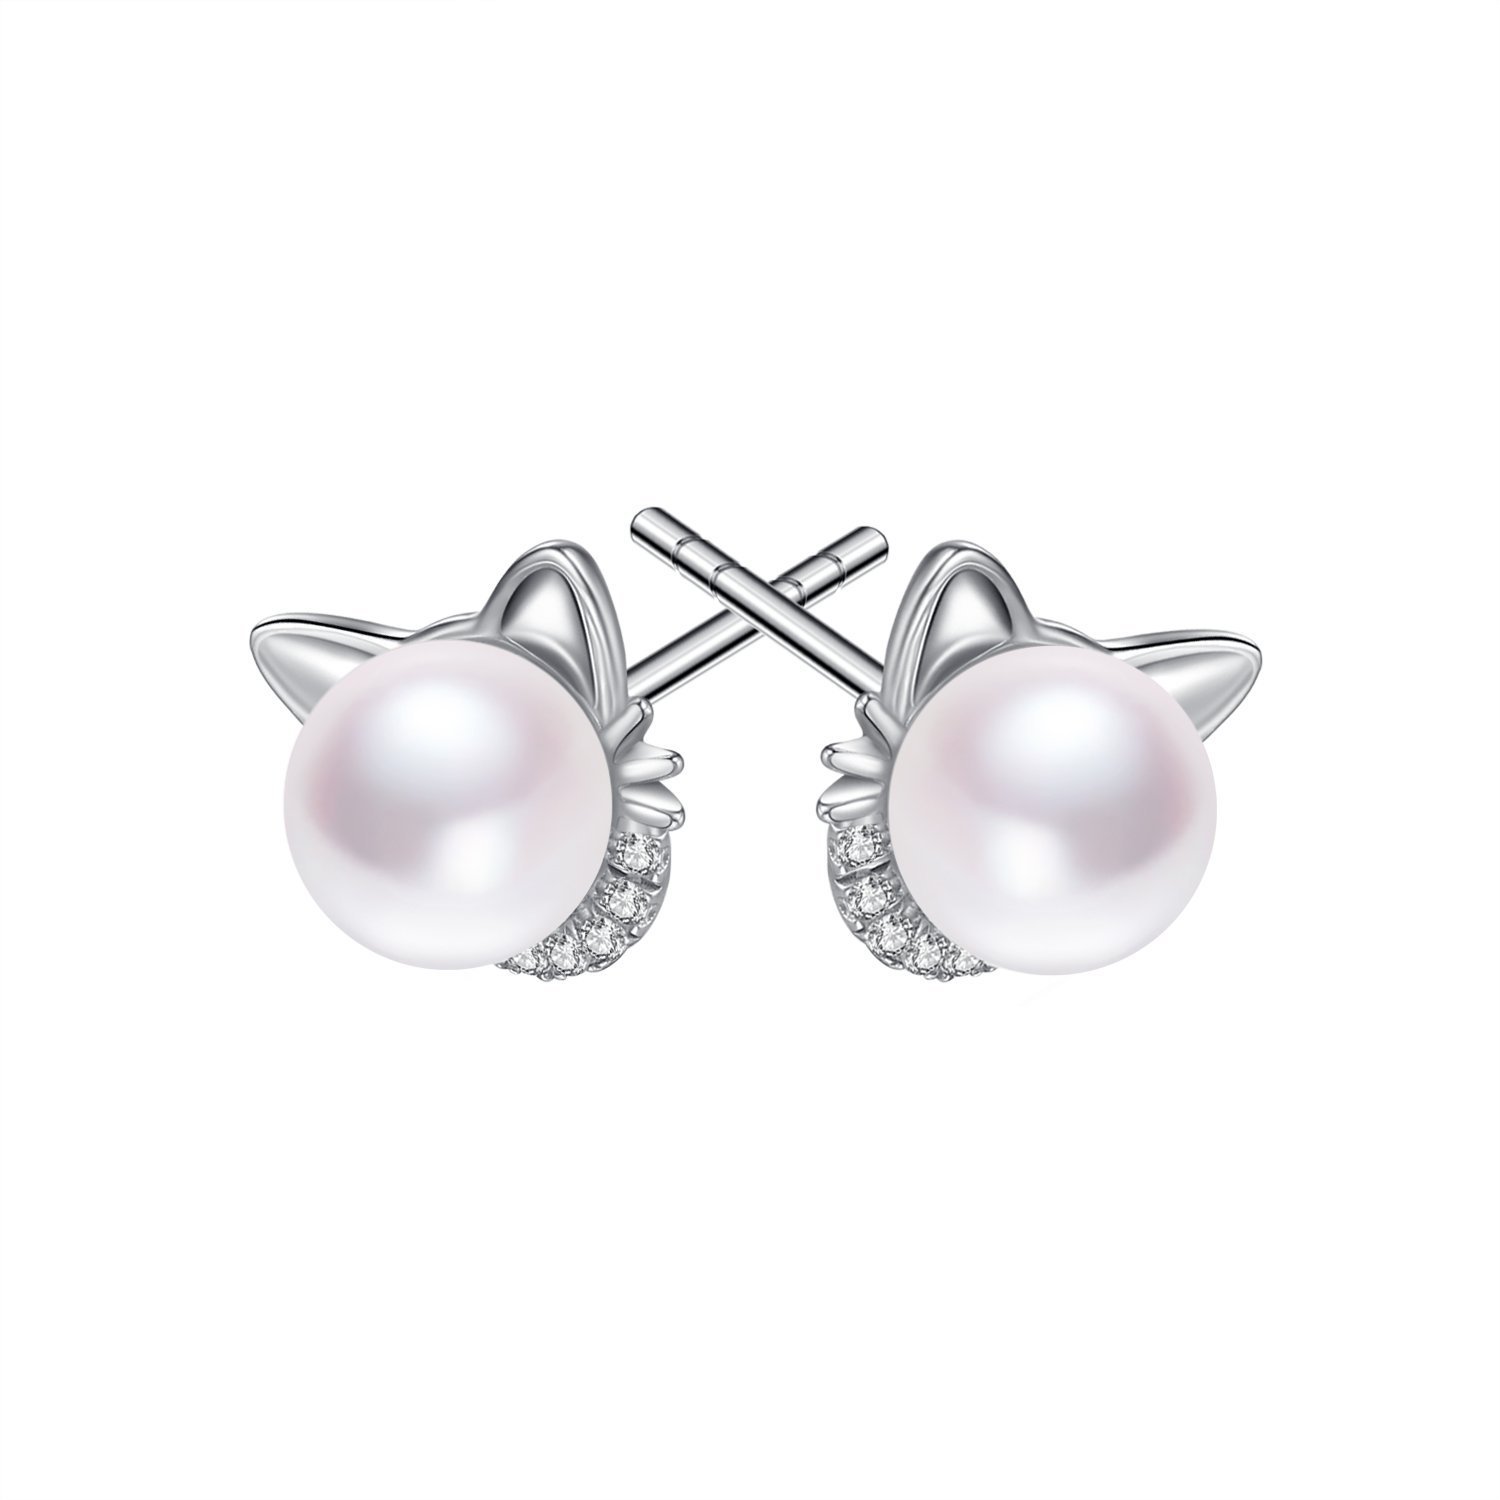 Rabbit Cat Earrings Freshwater Pearl Earrings Sterling Silver Stud Earrings for Women Gifts